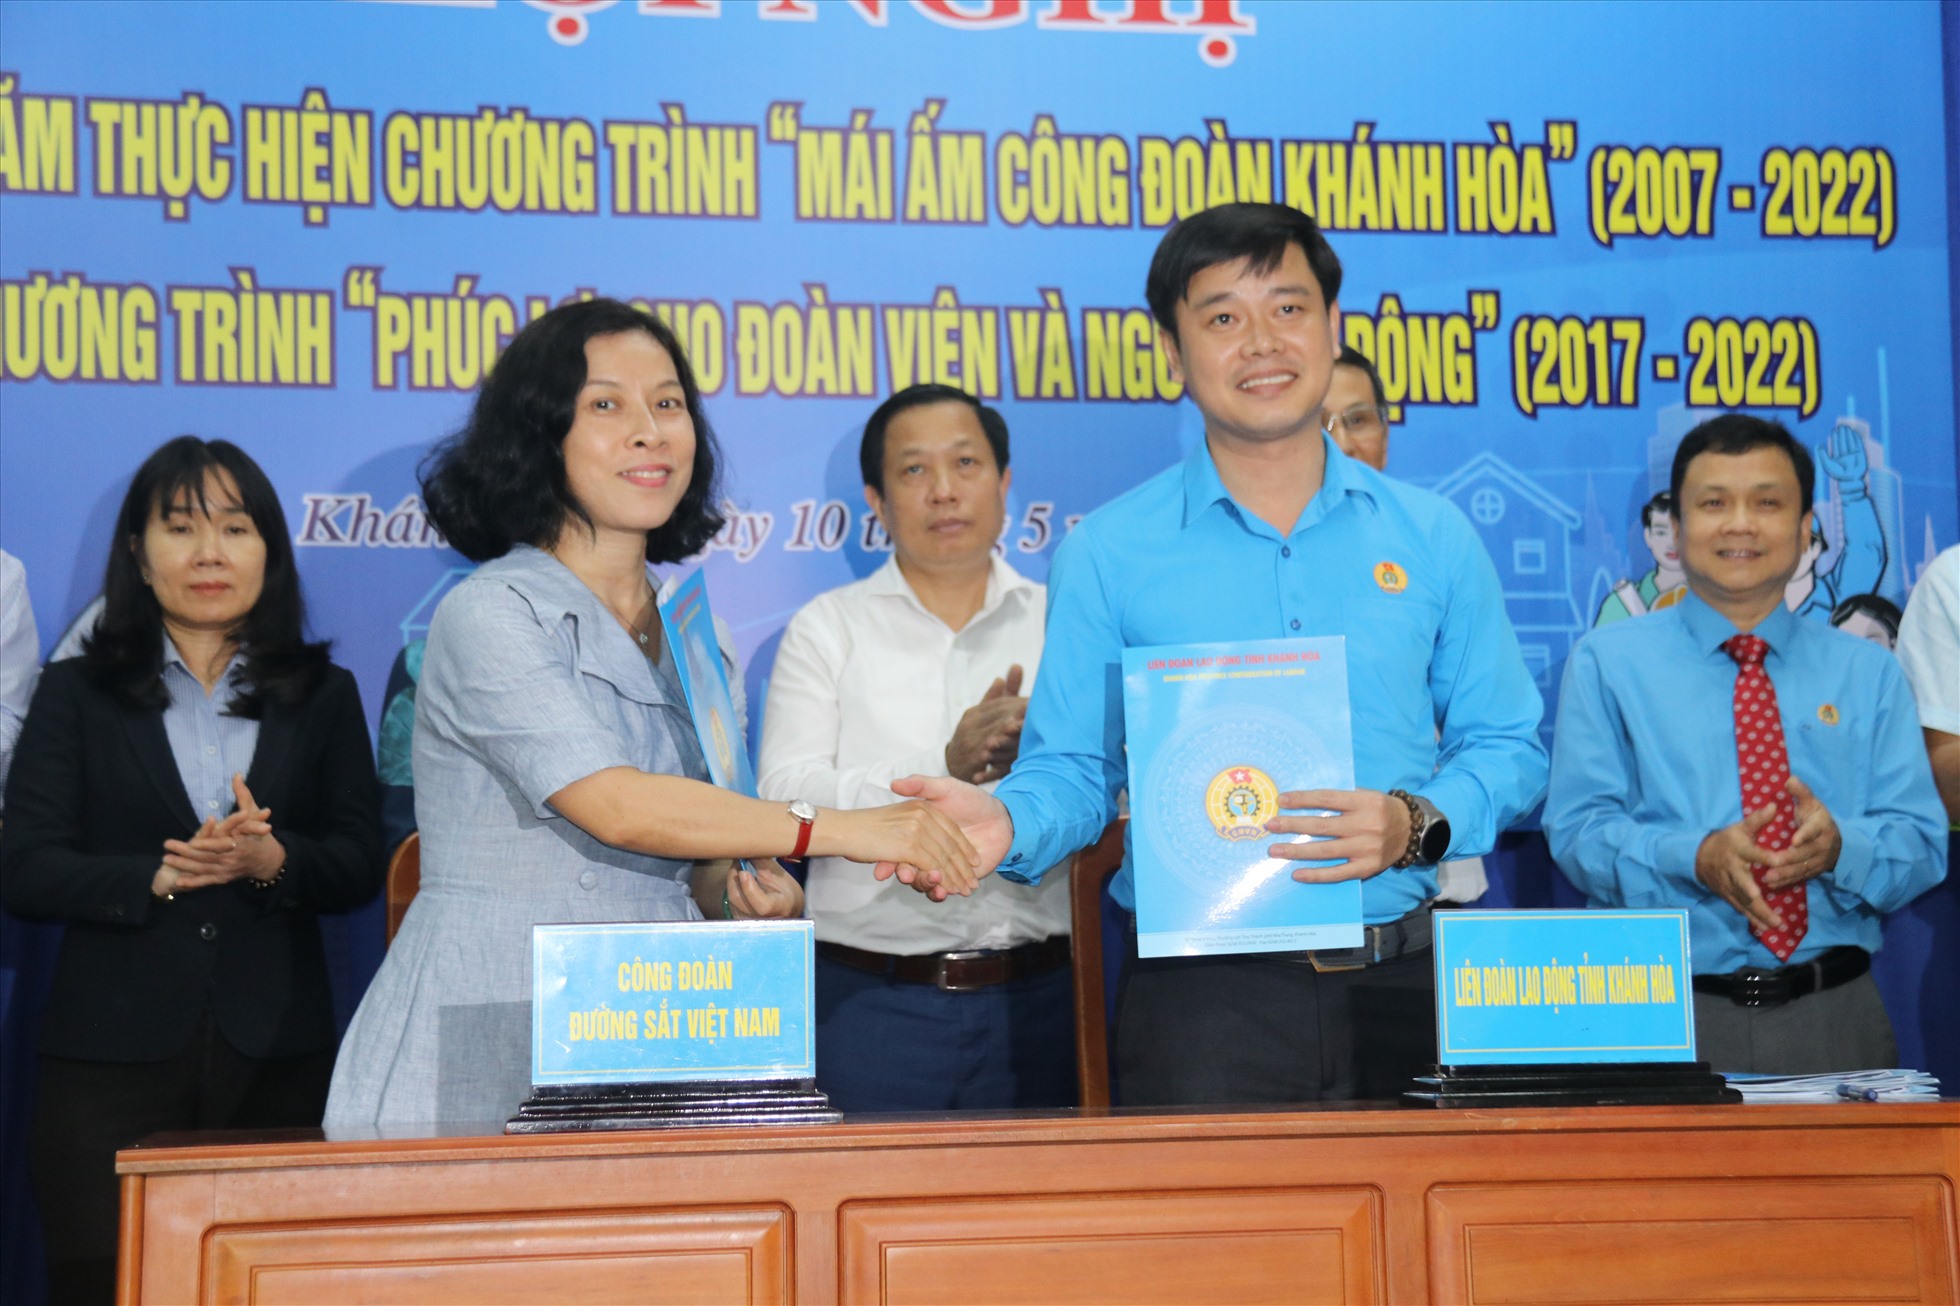 LĐLĐ tỉnh Khánh Hòa kí thỏa thuận hợp tác chương trình phúc lợi đoàn viên với Công đoàn Đường sắt Việt Nam trong năm 2023. Ảnh: Phương Linh